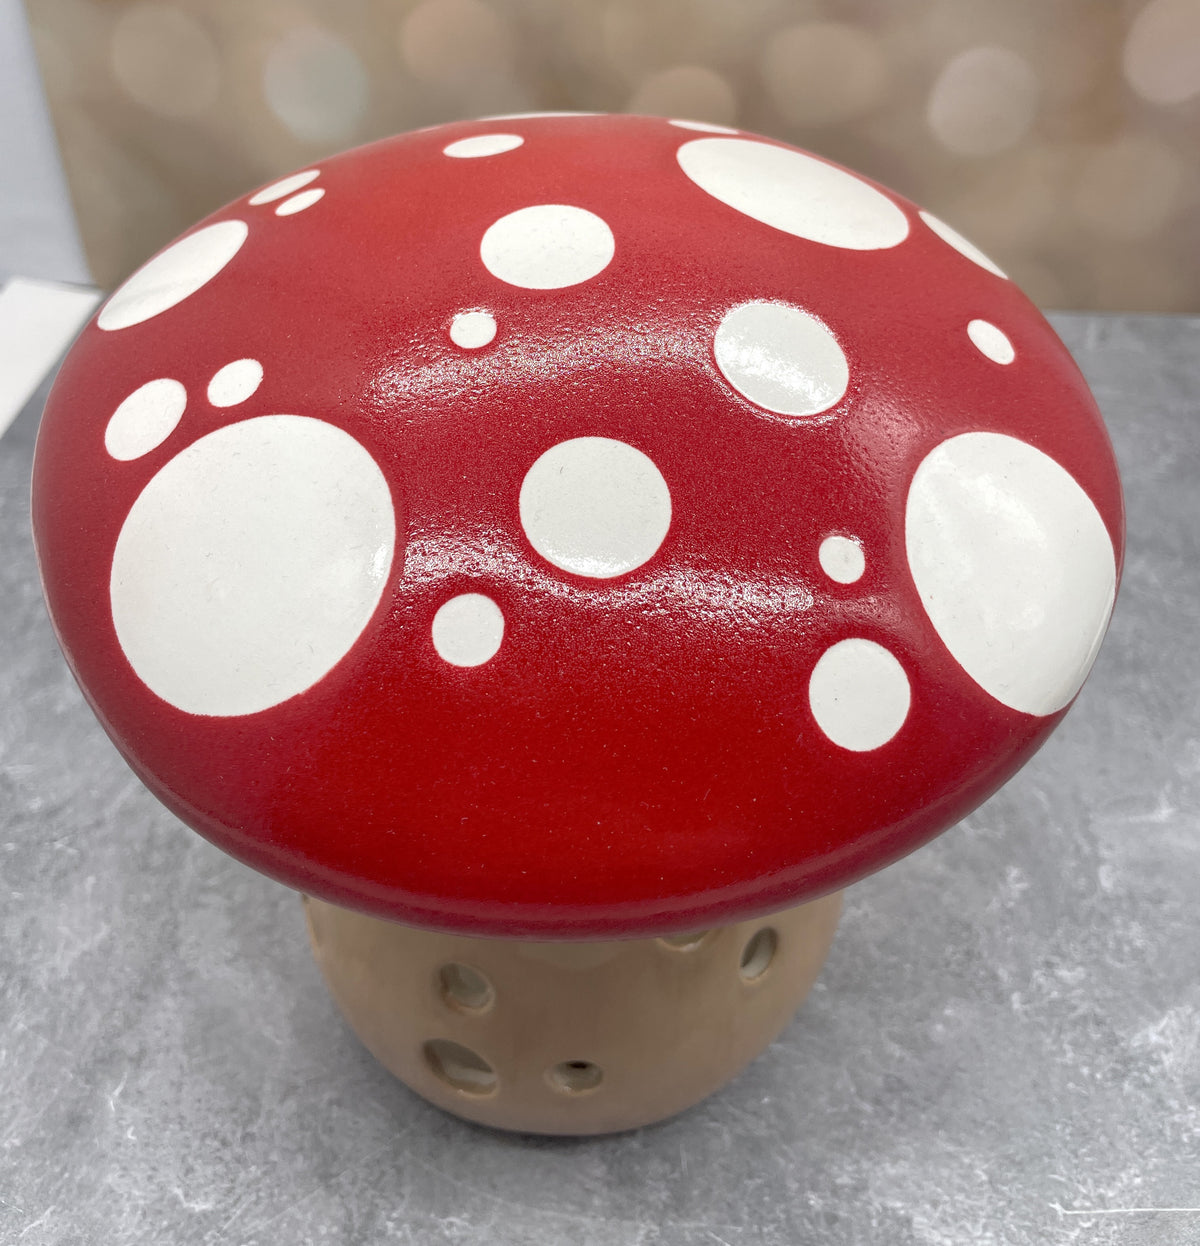 Mushroom Lantern